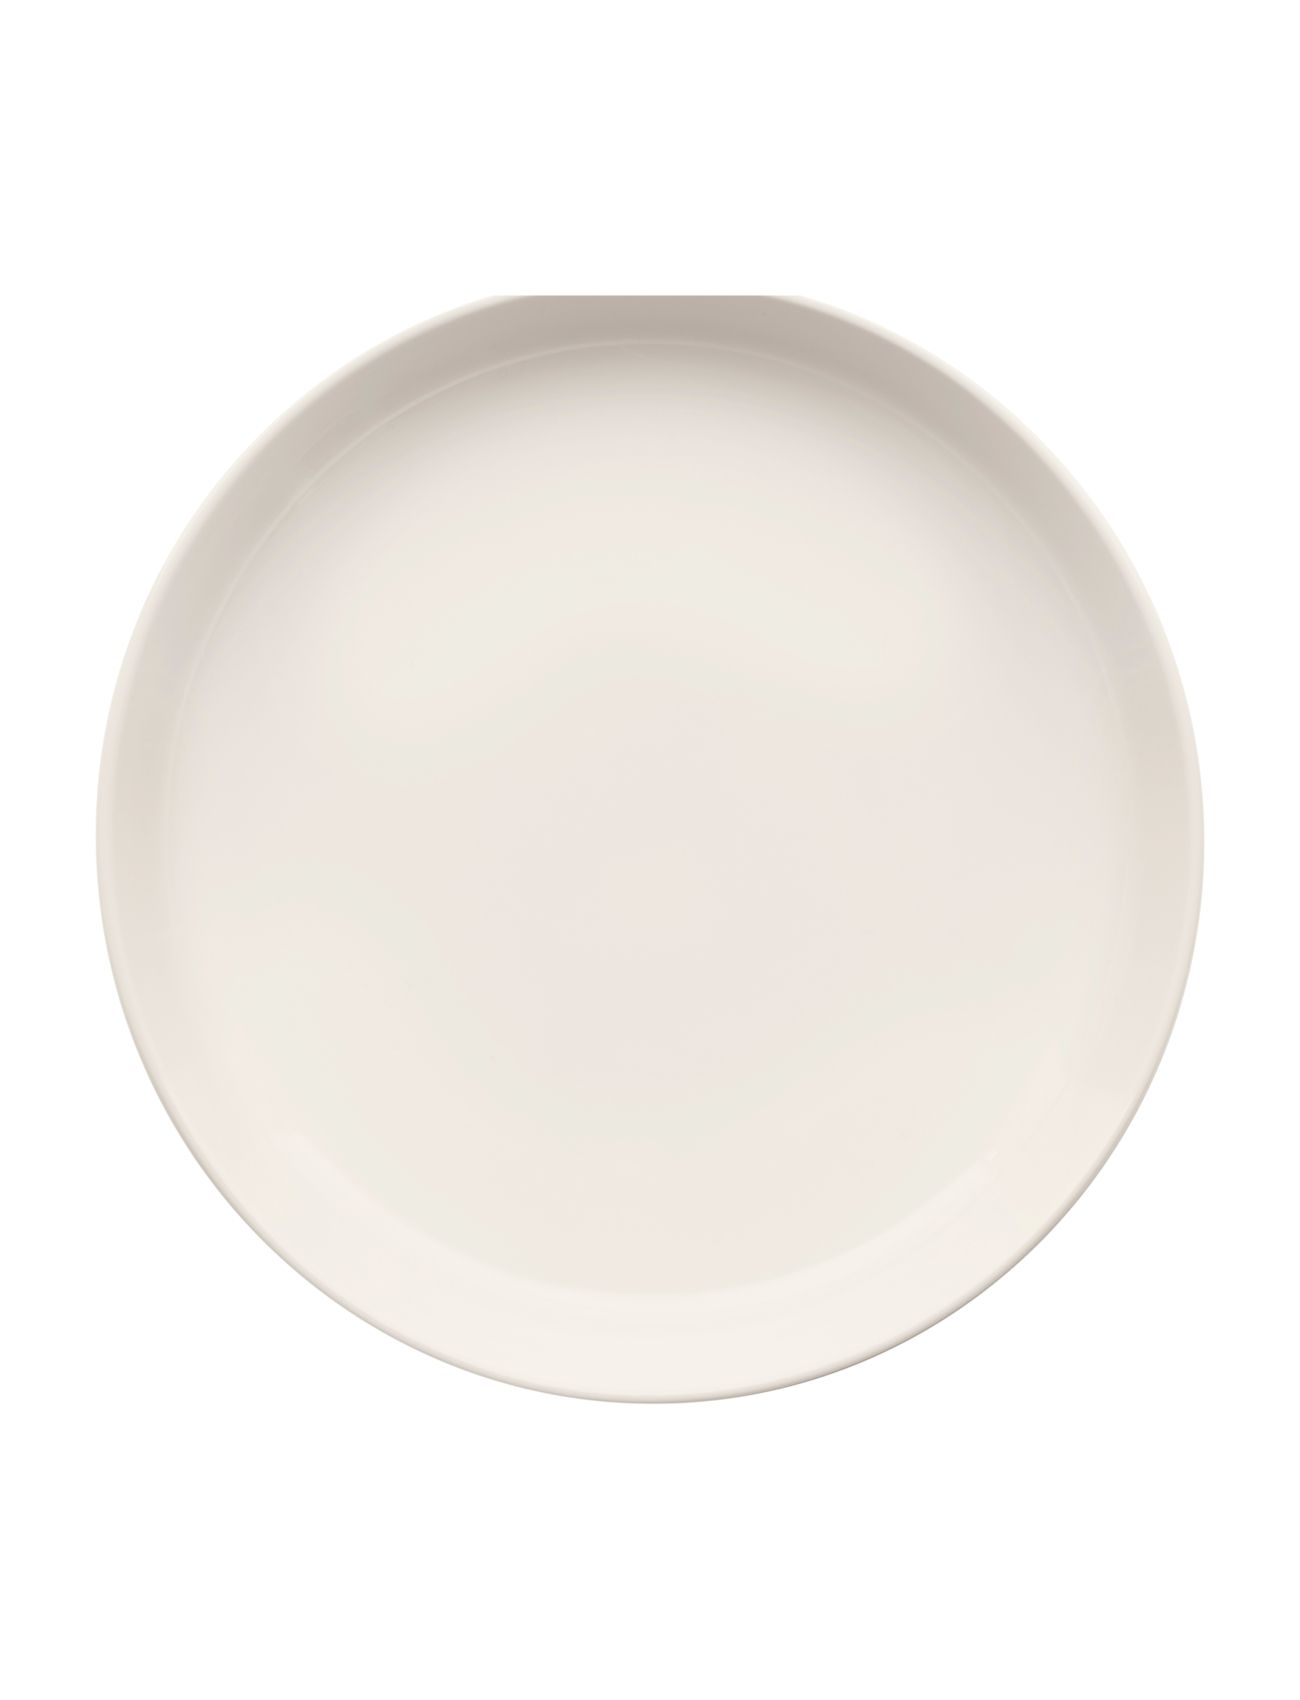 iittala Essense Skål 0,83L/20,5Cm Home Tableware Plates Deep Plates Hvit Iittala